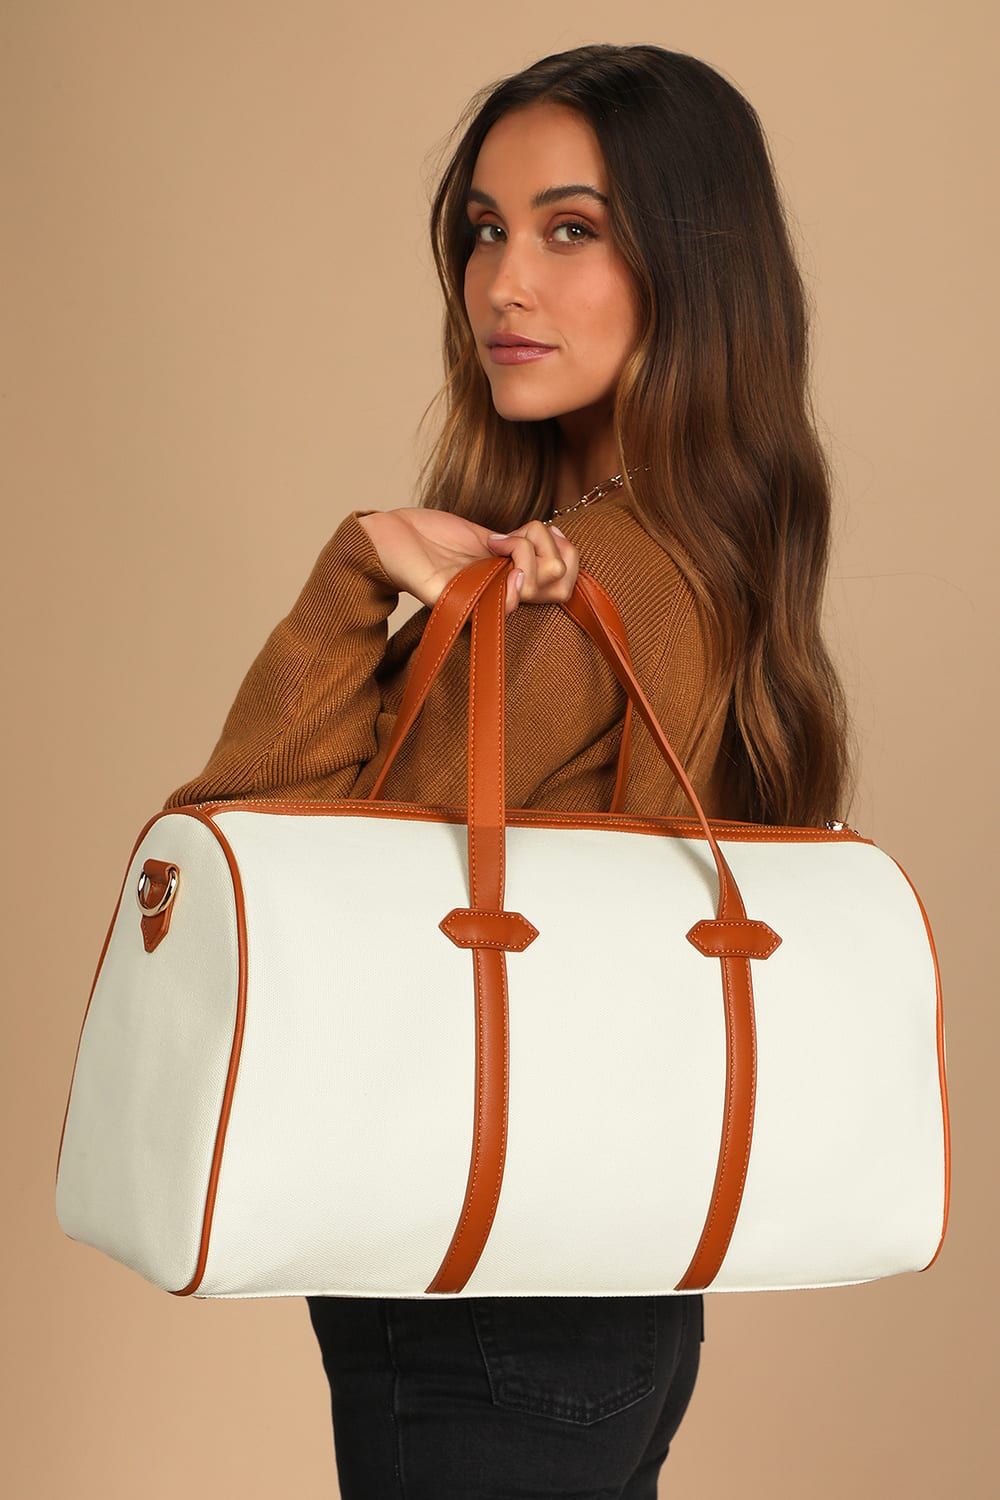 Next Destination Ivory and Camel Weekender Bag | Lulus (US)